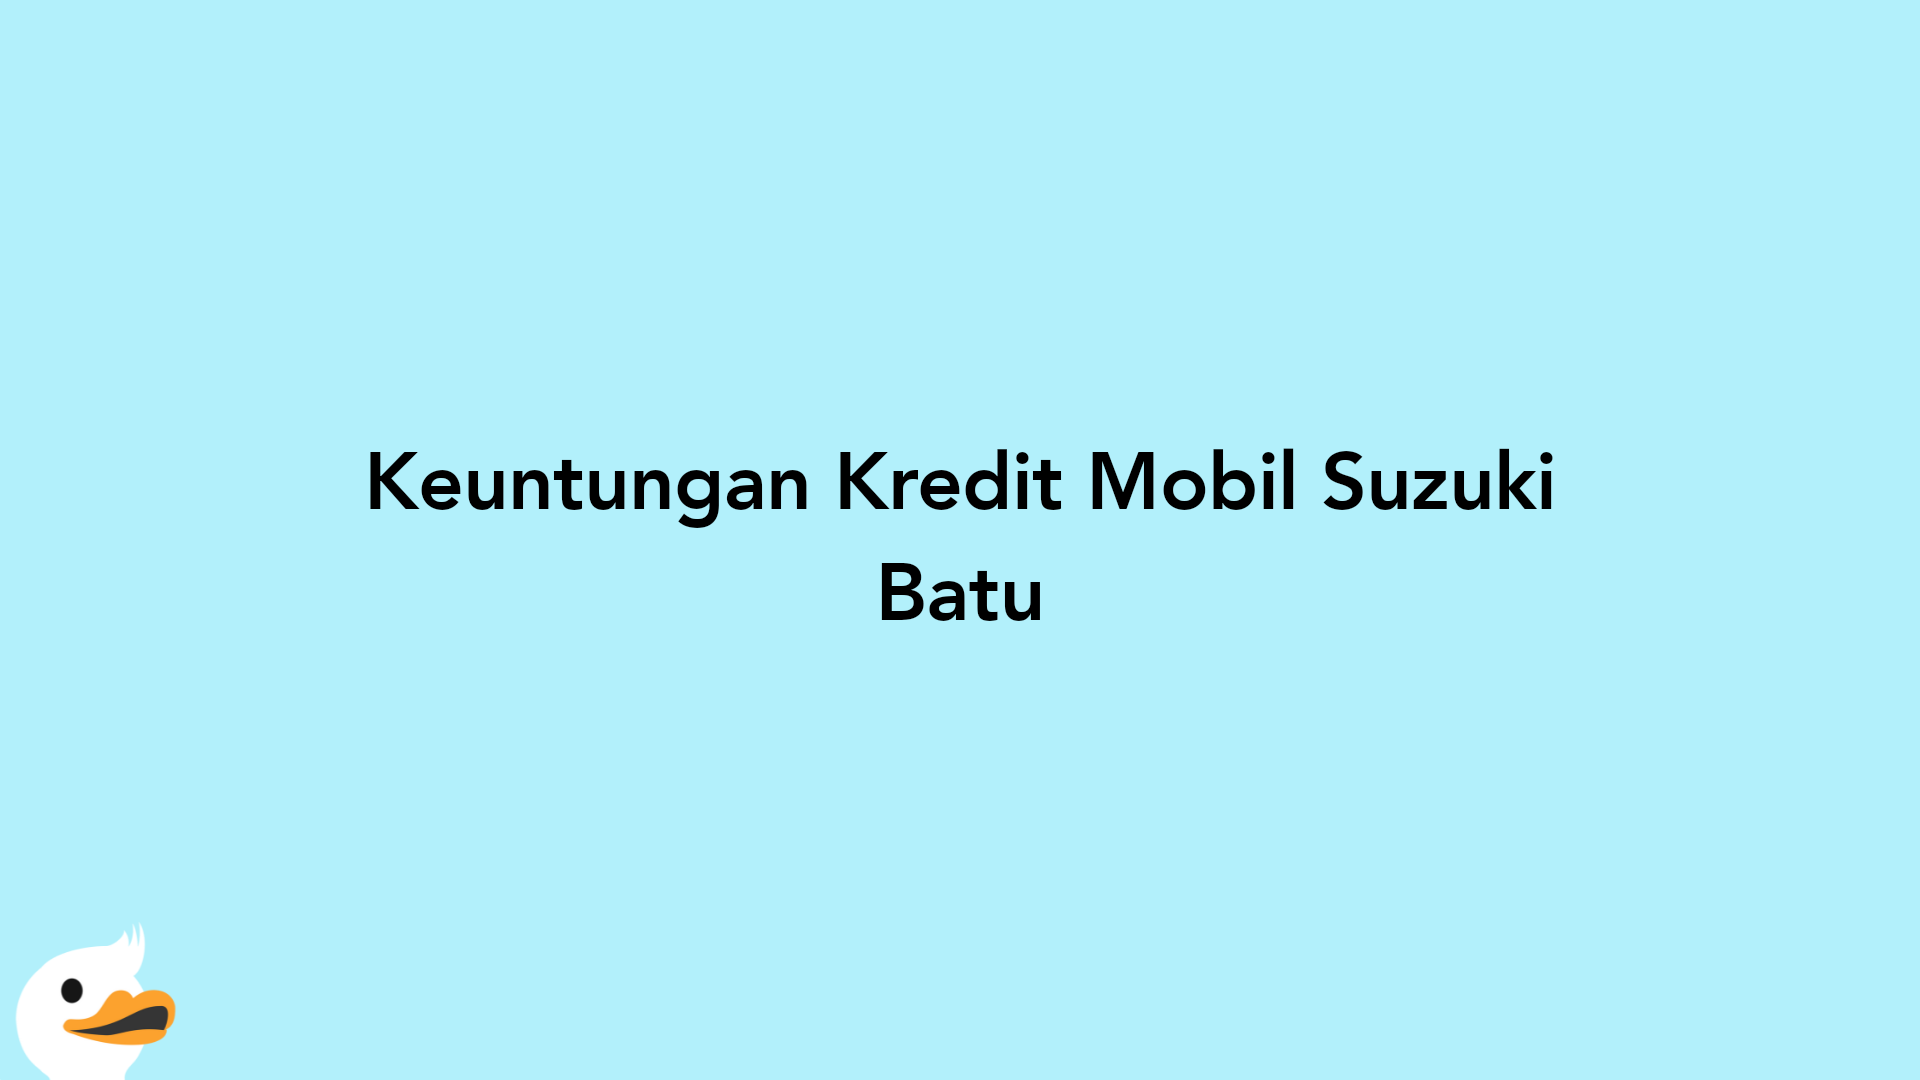 Keuntungan Kredit Mobil Suzuki Batu